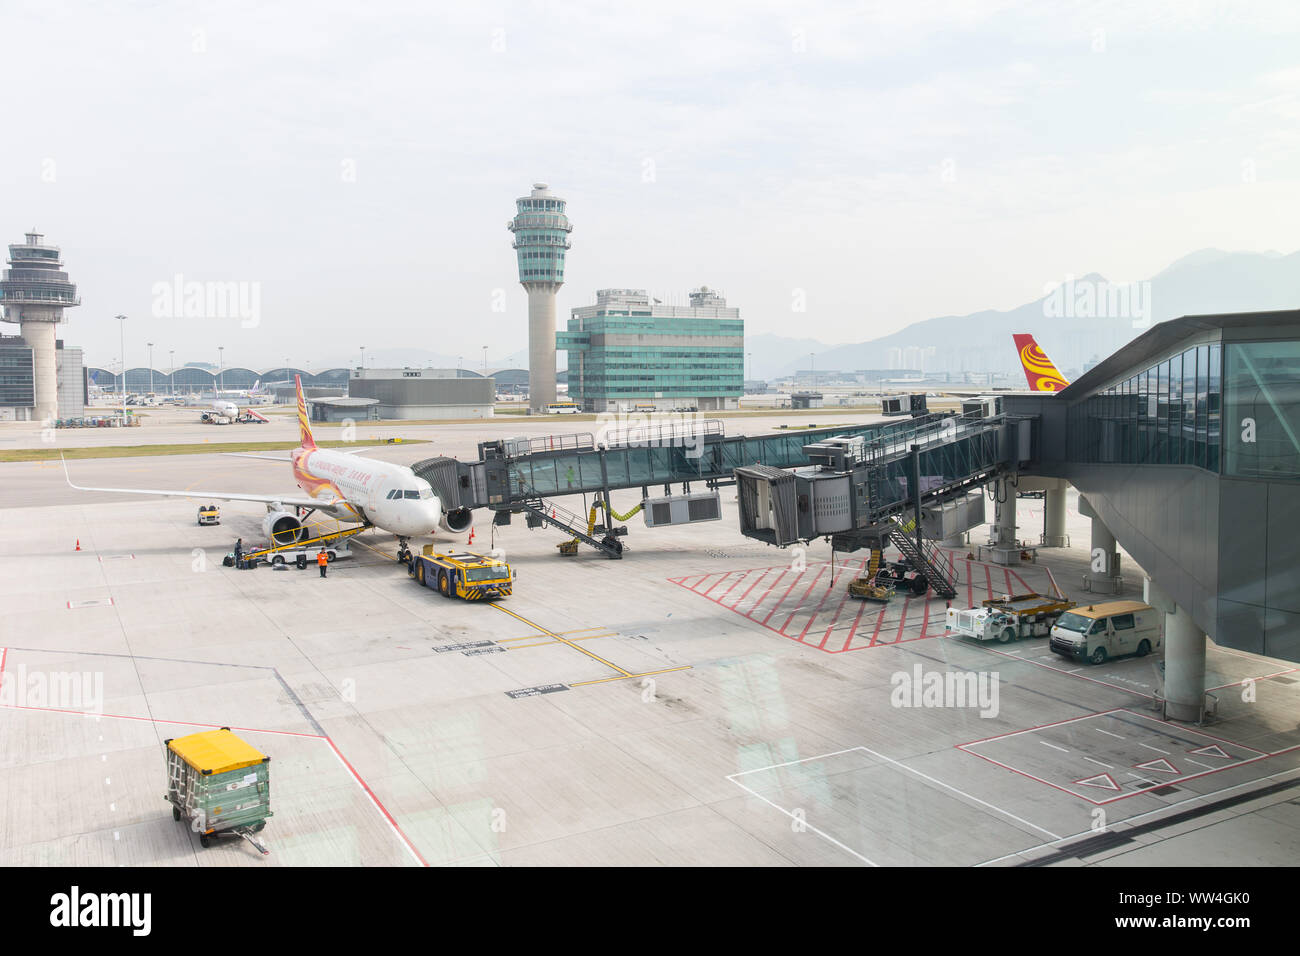 Hongkong Airlines Flugzeug dock bridge Passagier von Terminal an der Start- und Landebahn Park Hong Kong International Airport zu übertragen. Hongkong, den 24. November Stockfoto